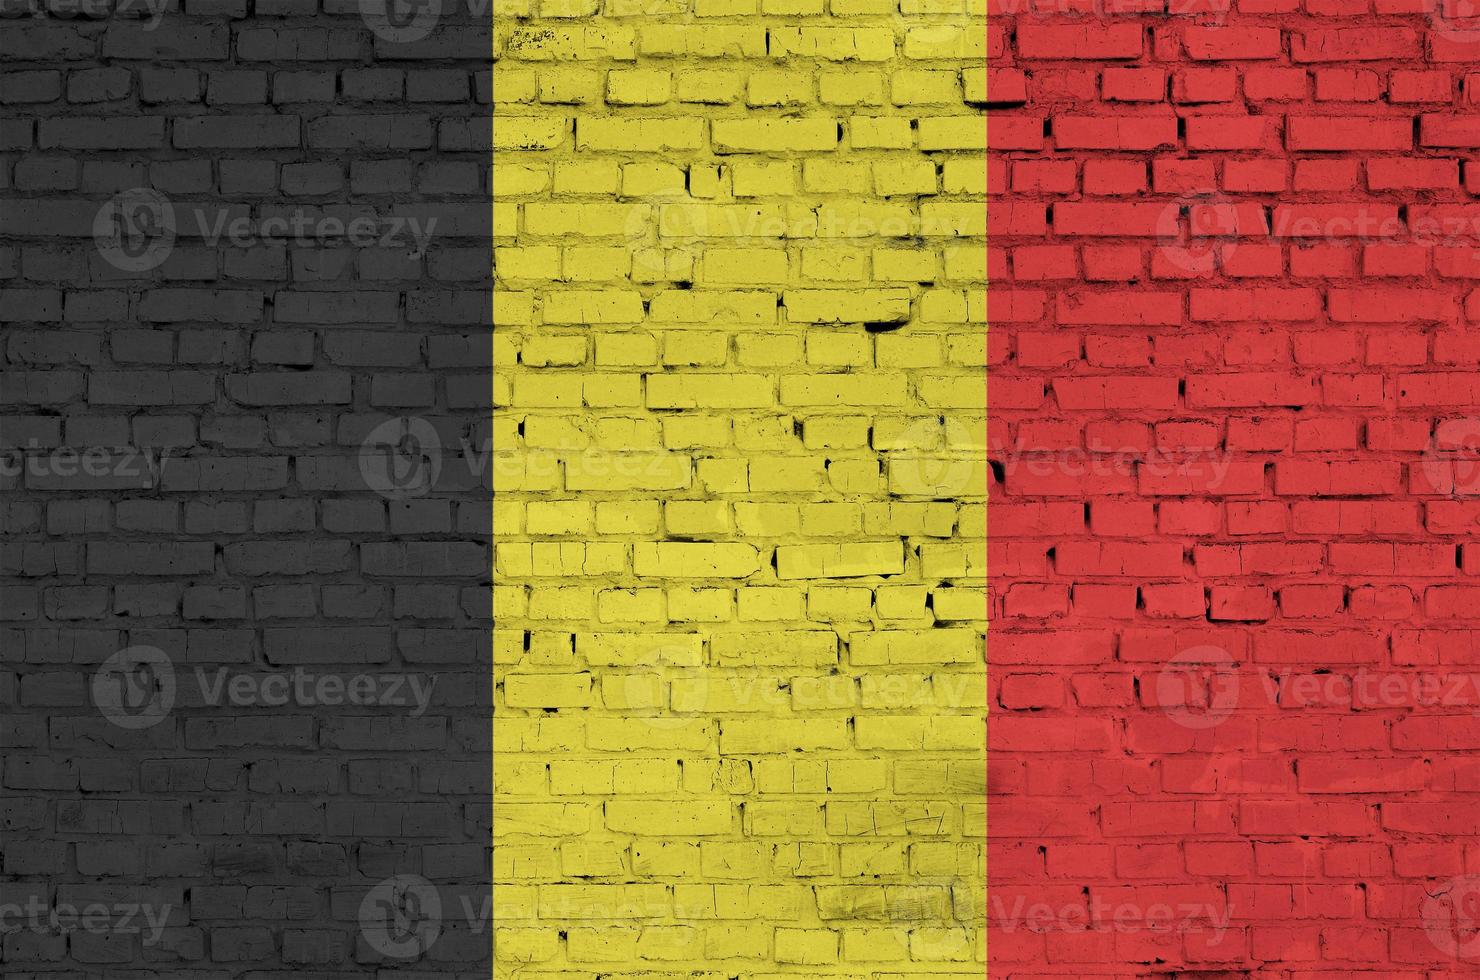 belgien flagga är målad till ett gammal tegel vägg foto